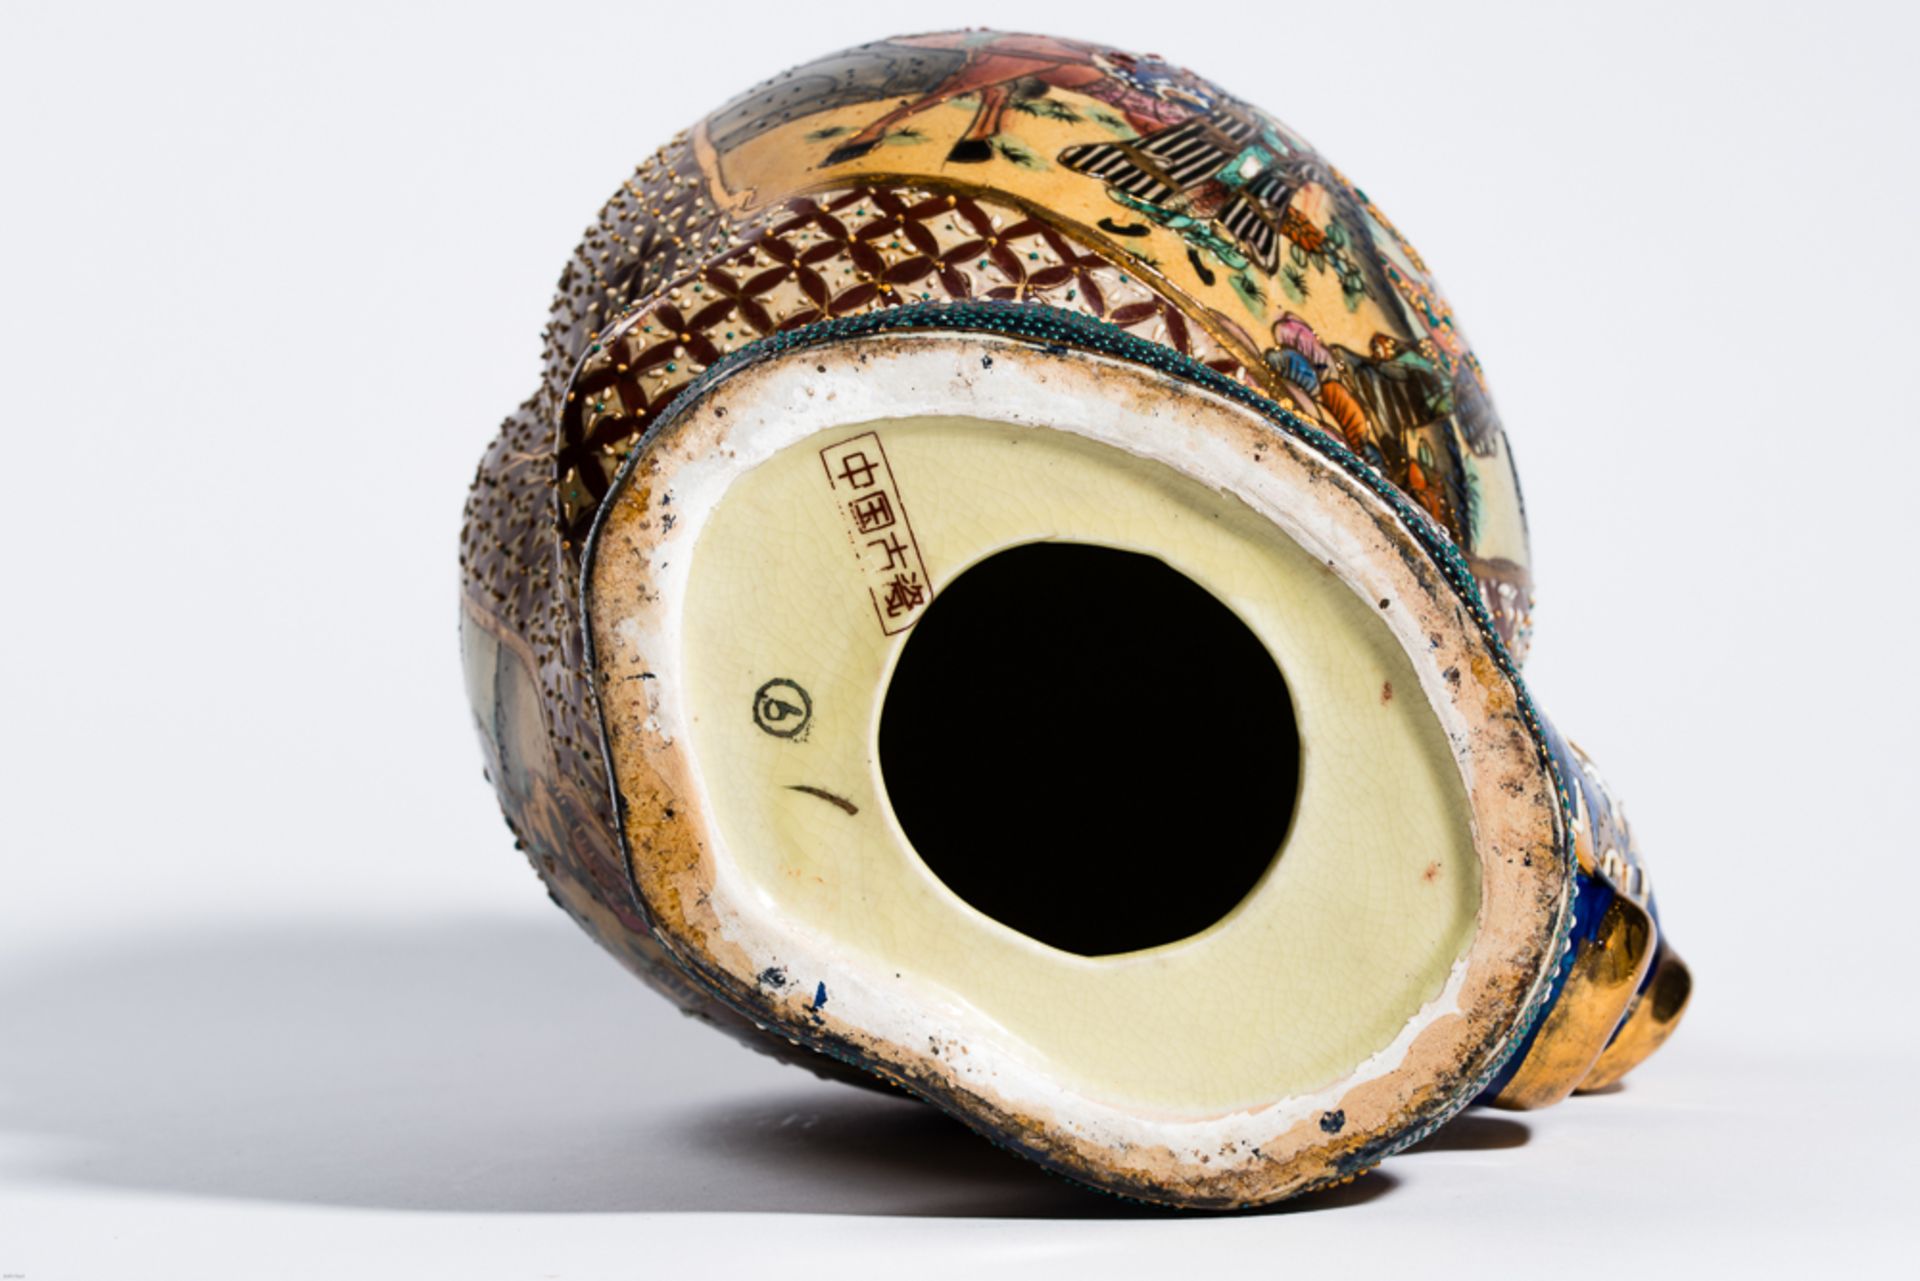 GROSSER LANGLEBENS-PFIRSICH MIT GOTTHEIT
In der Art der japan. Satsuma-Keramik mit Gold. ChinaEine - Bild 7 aus 8